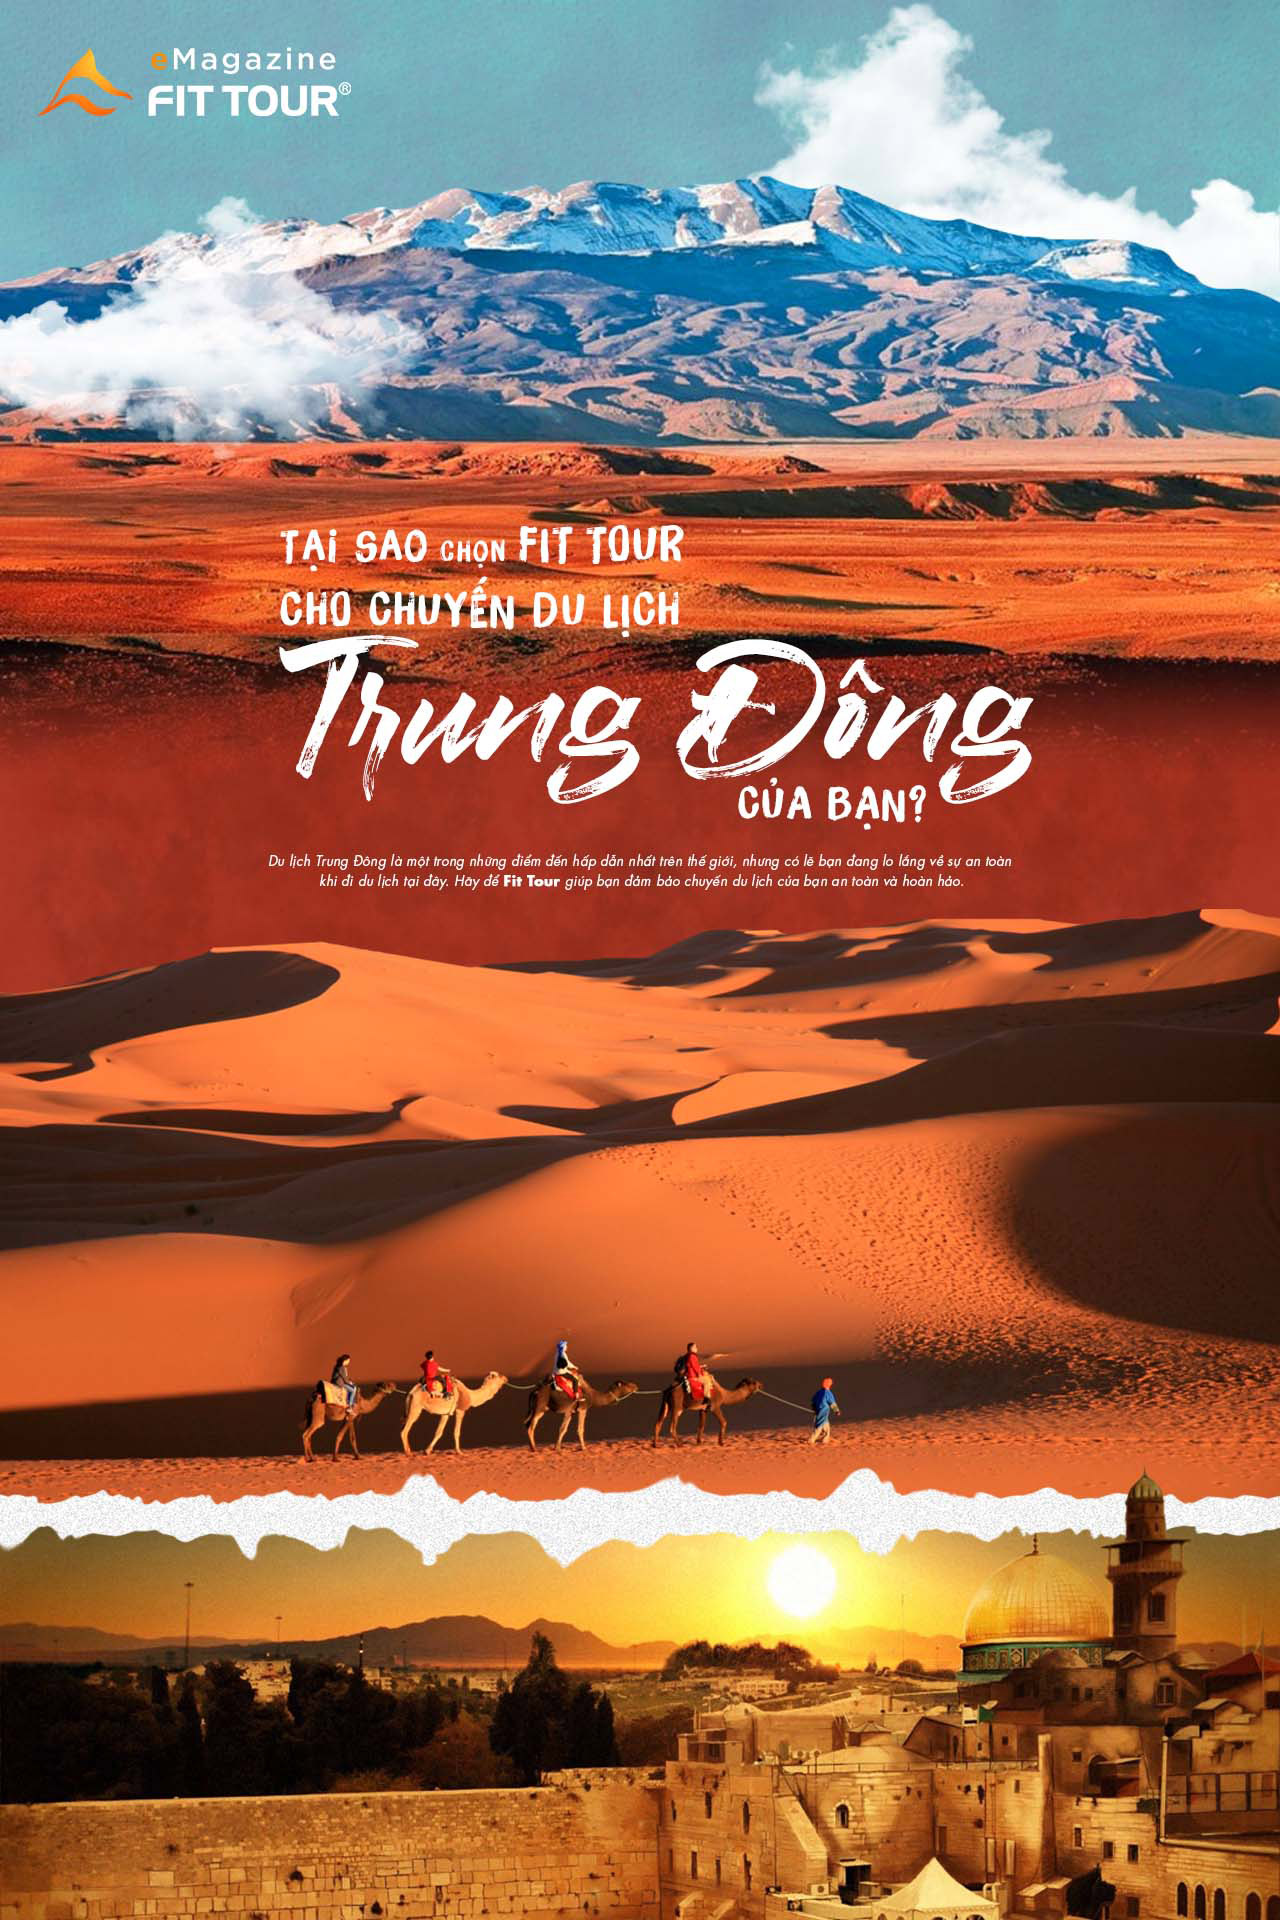 Emagazine tại sao nên chọn Fit Tour cho chuyến du lịch Trung Đông